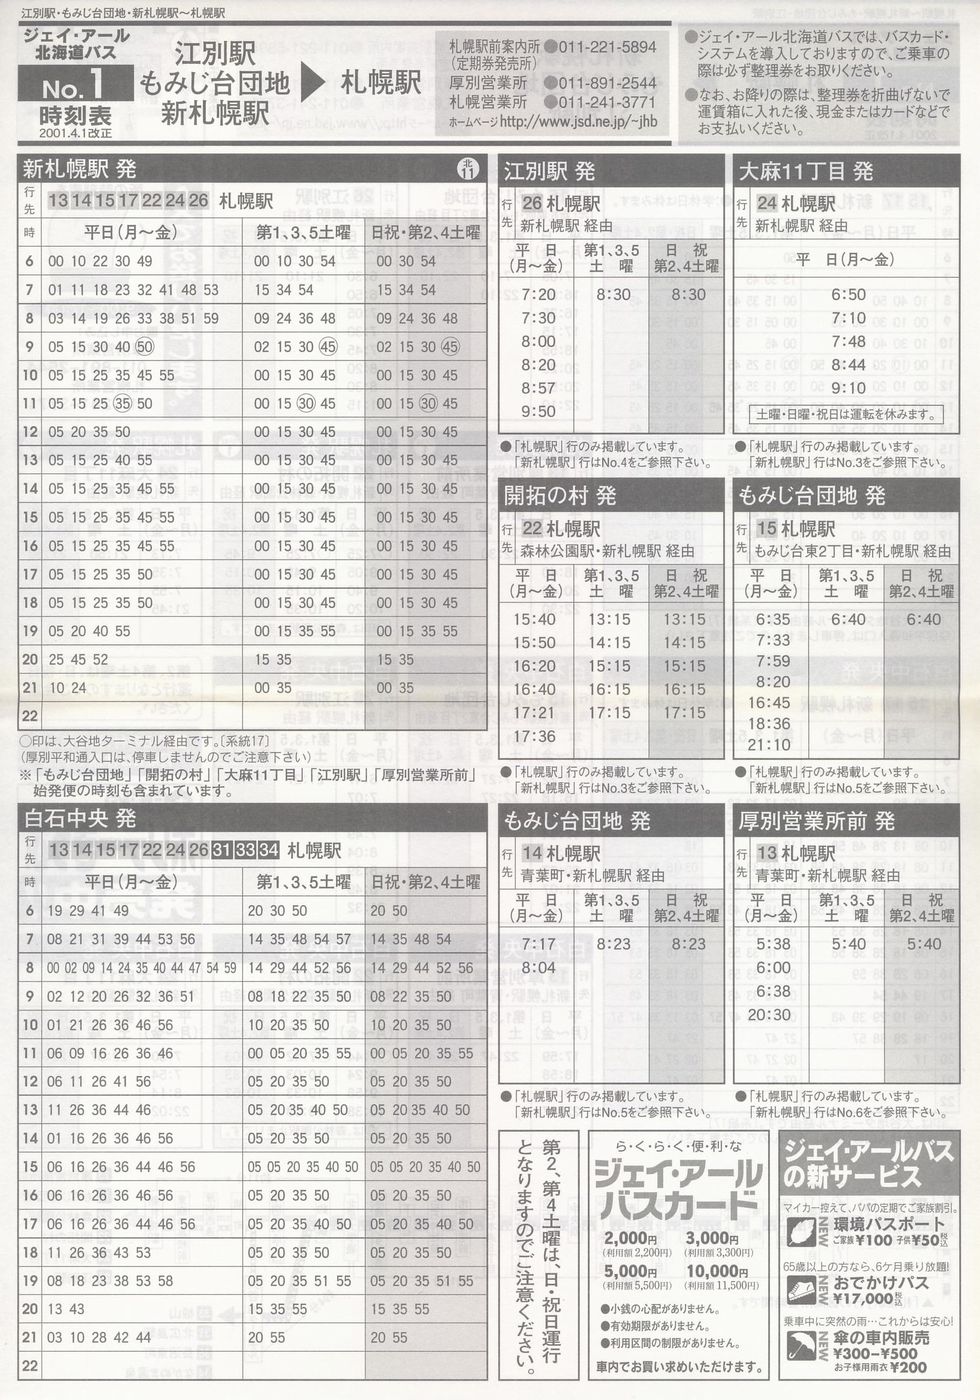 2001-04-01改正_ジェイ・アール北海道バス_空知線時刻表１表面